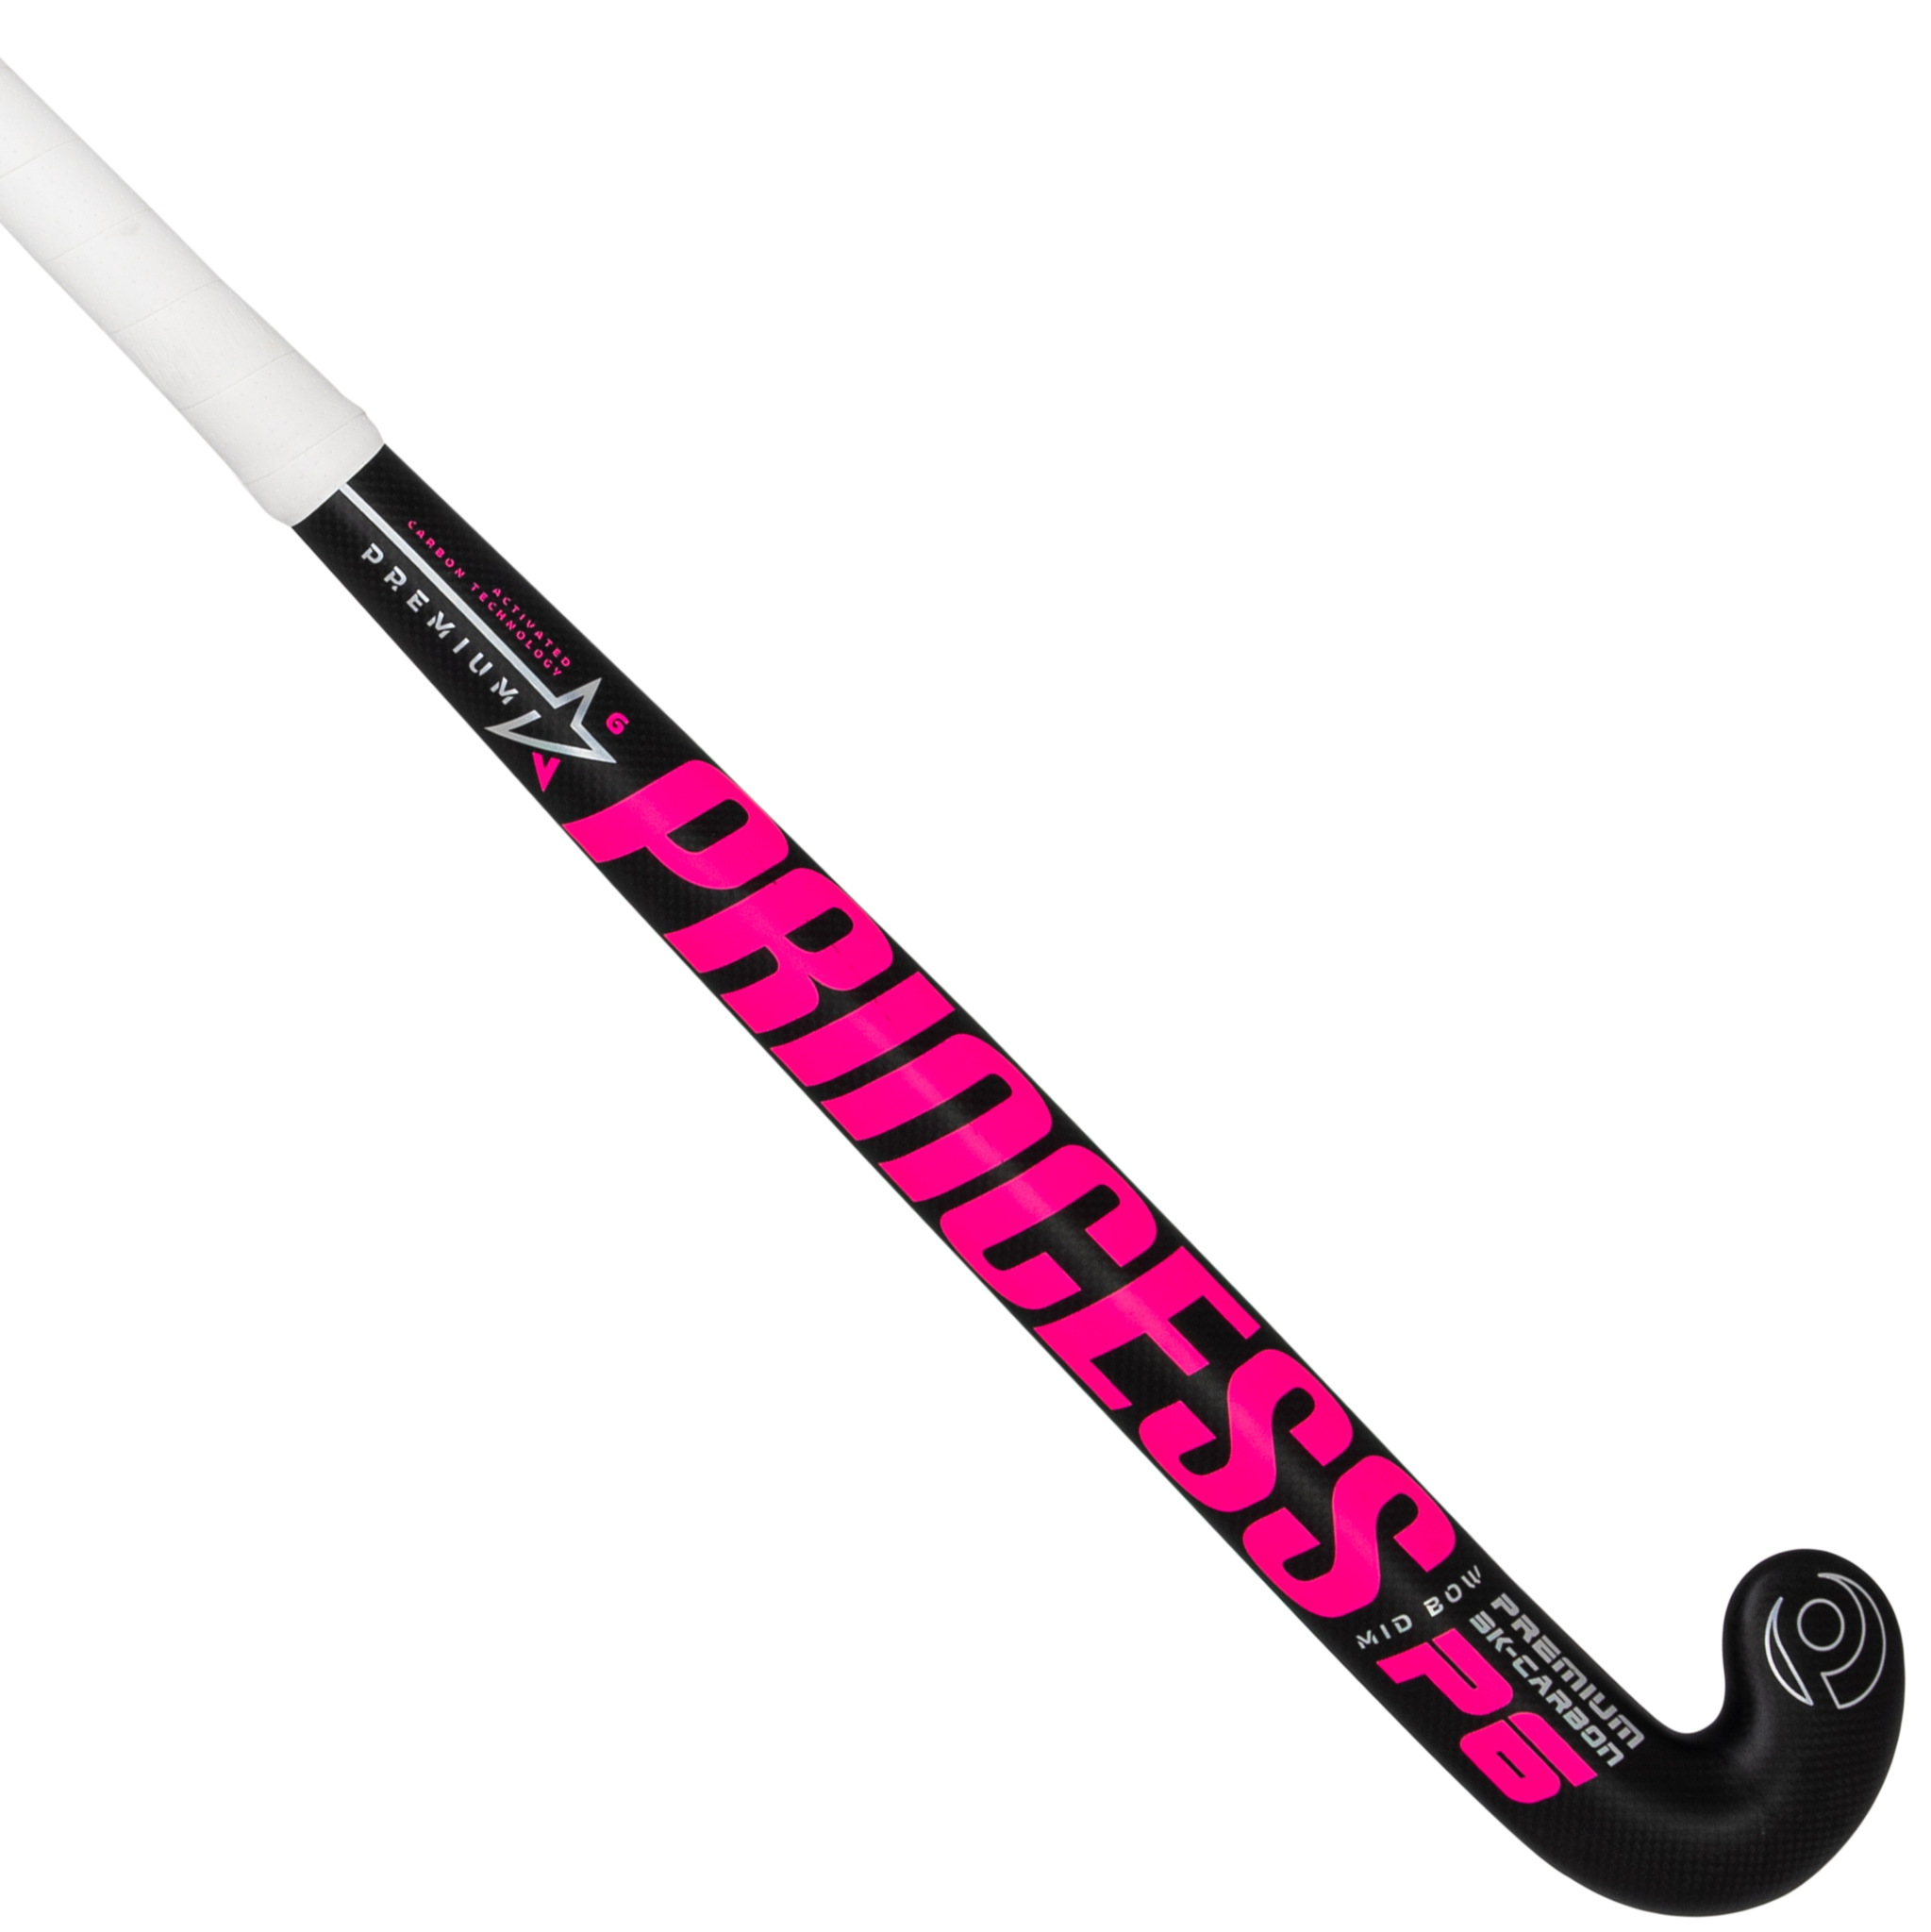 Princess Hockey Premium 6 STAR Black/NPi SG9-Low Bow 23